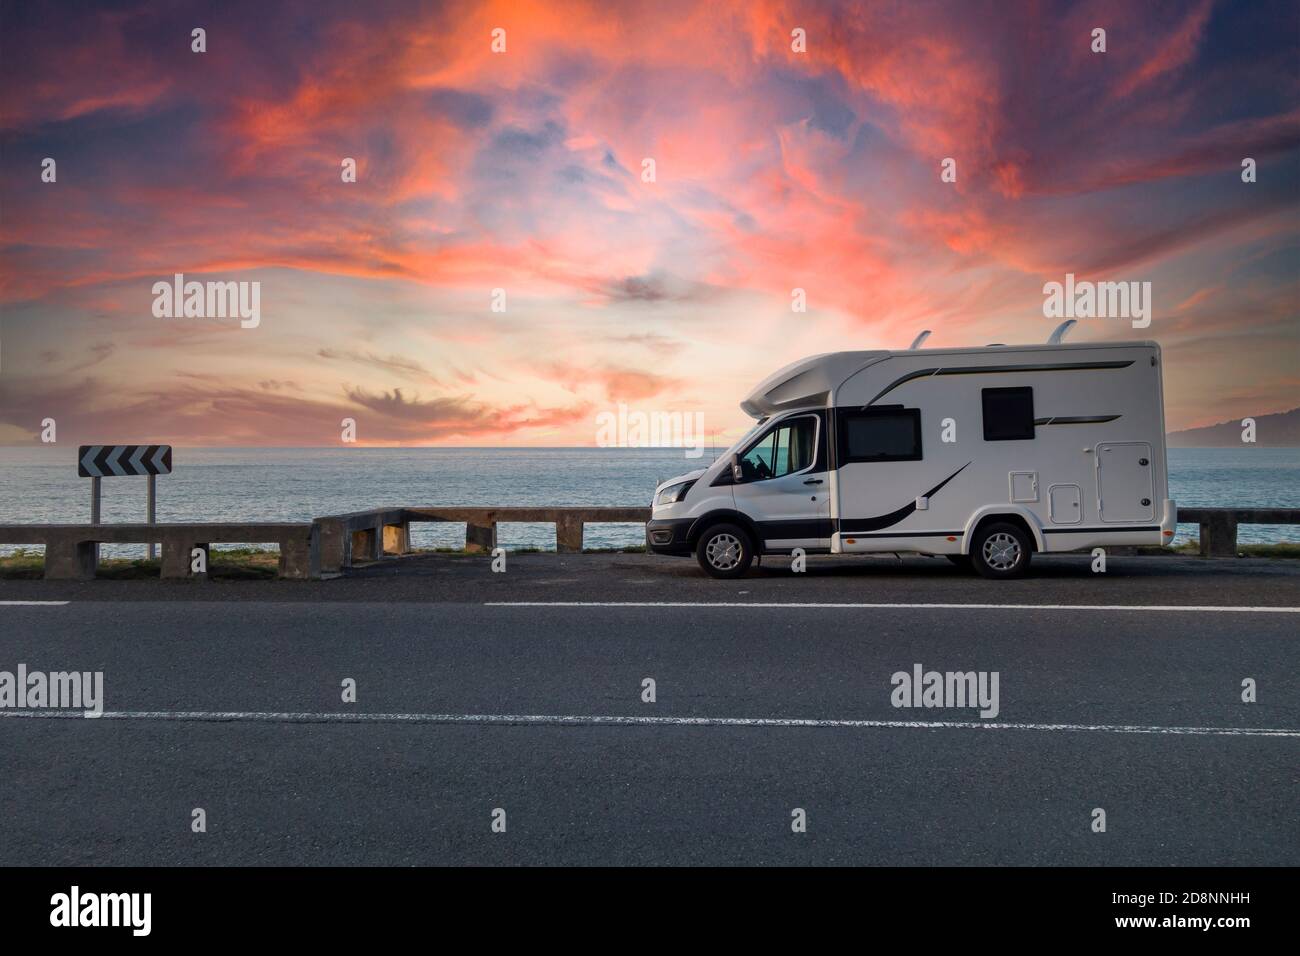 Caravana aparcada junto al mar al atardecer, con un cielo dramático Foto de stock